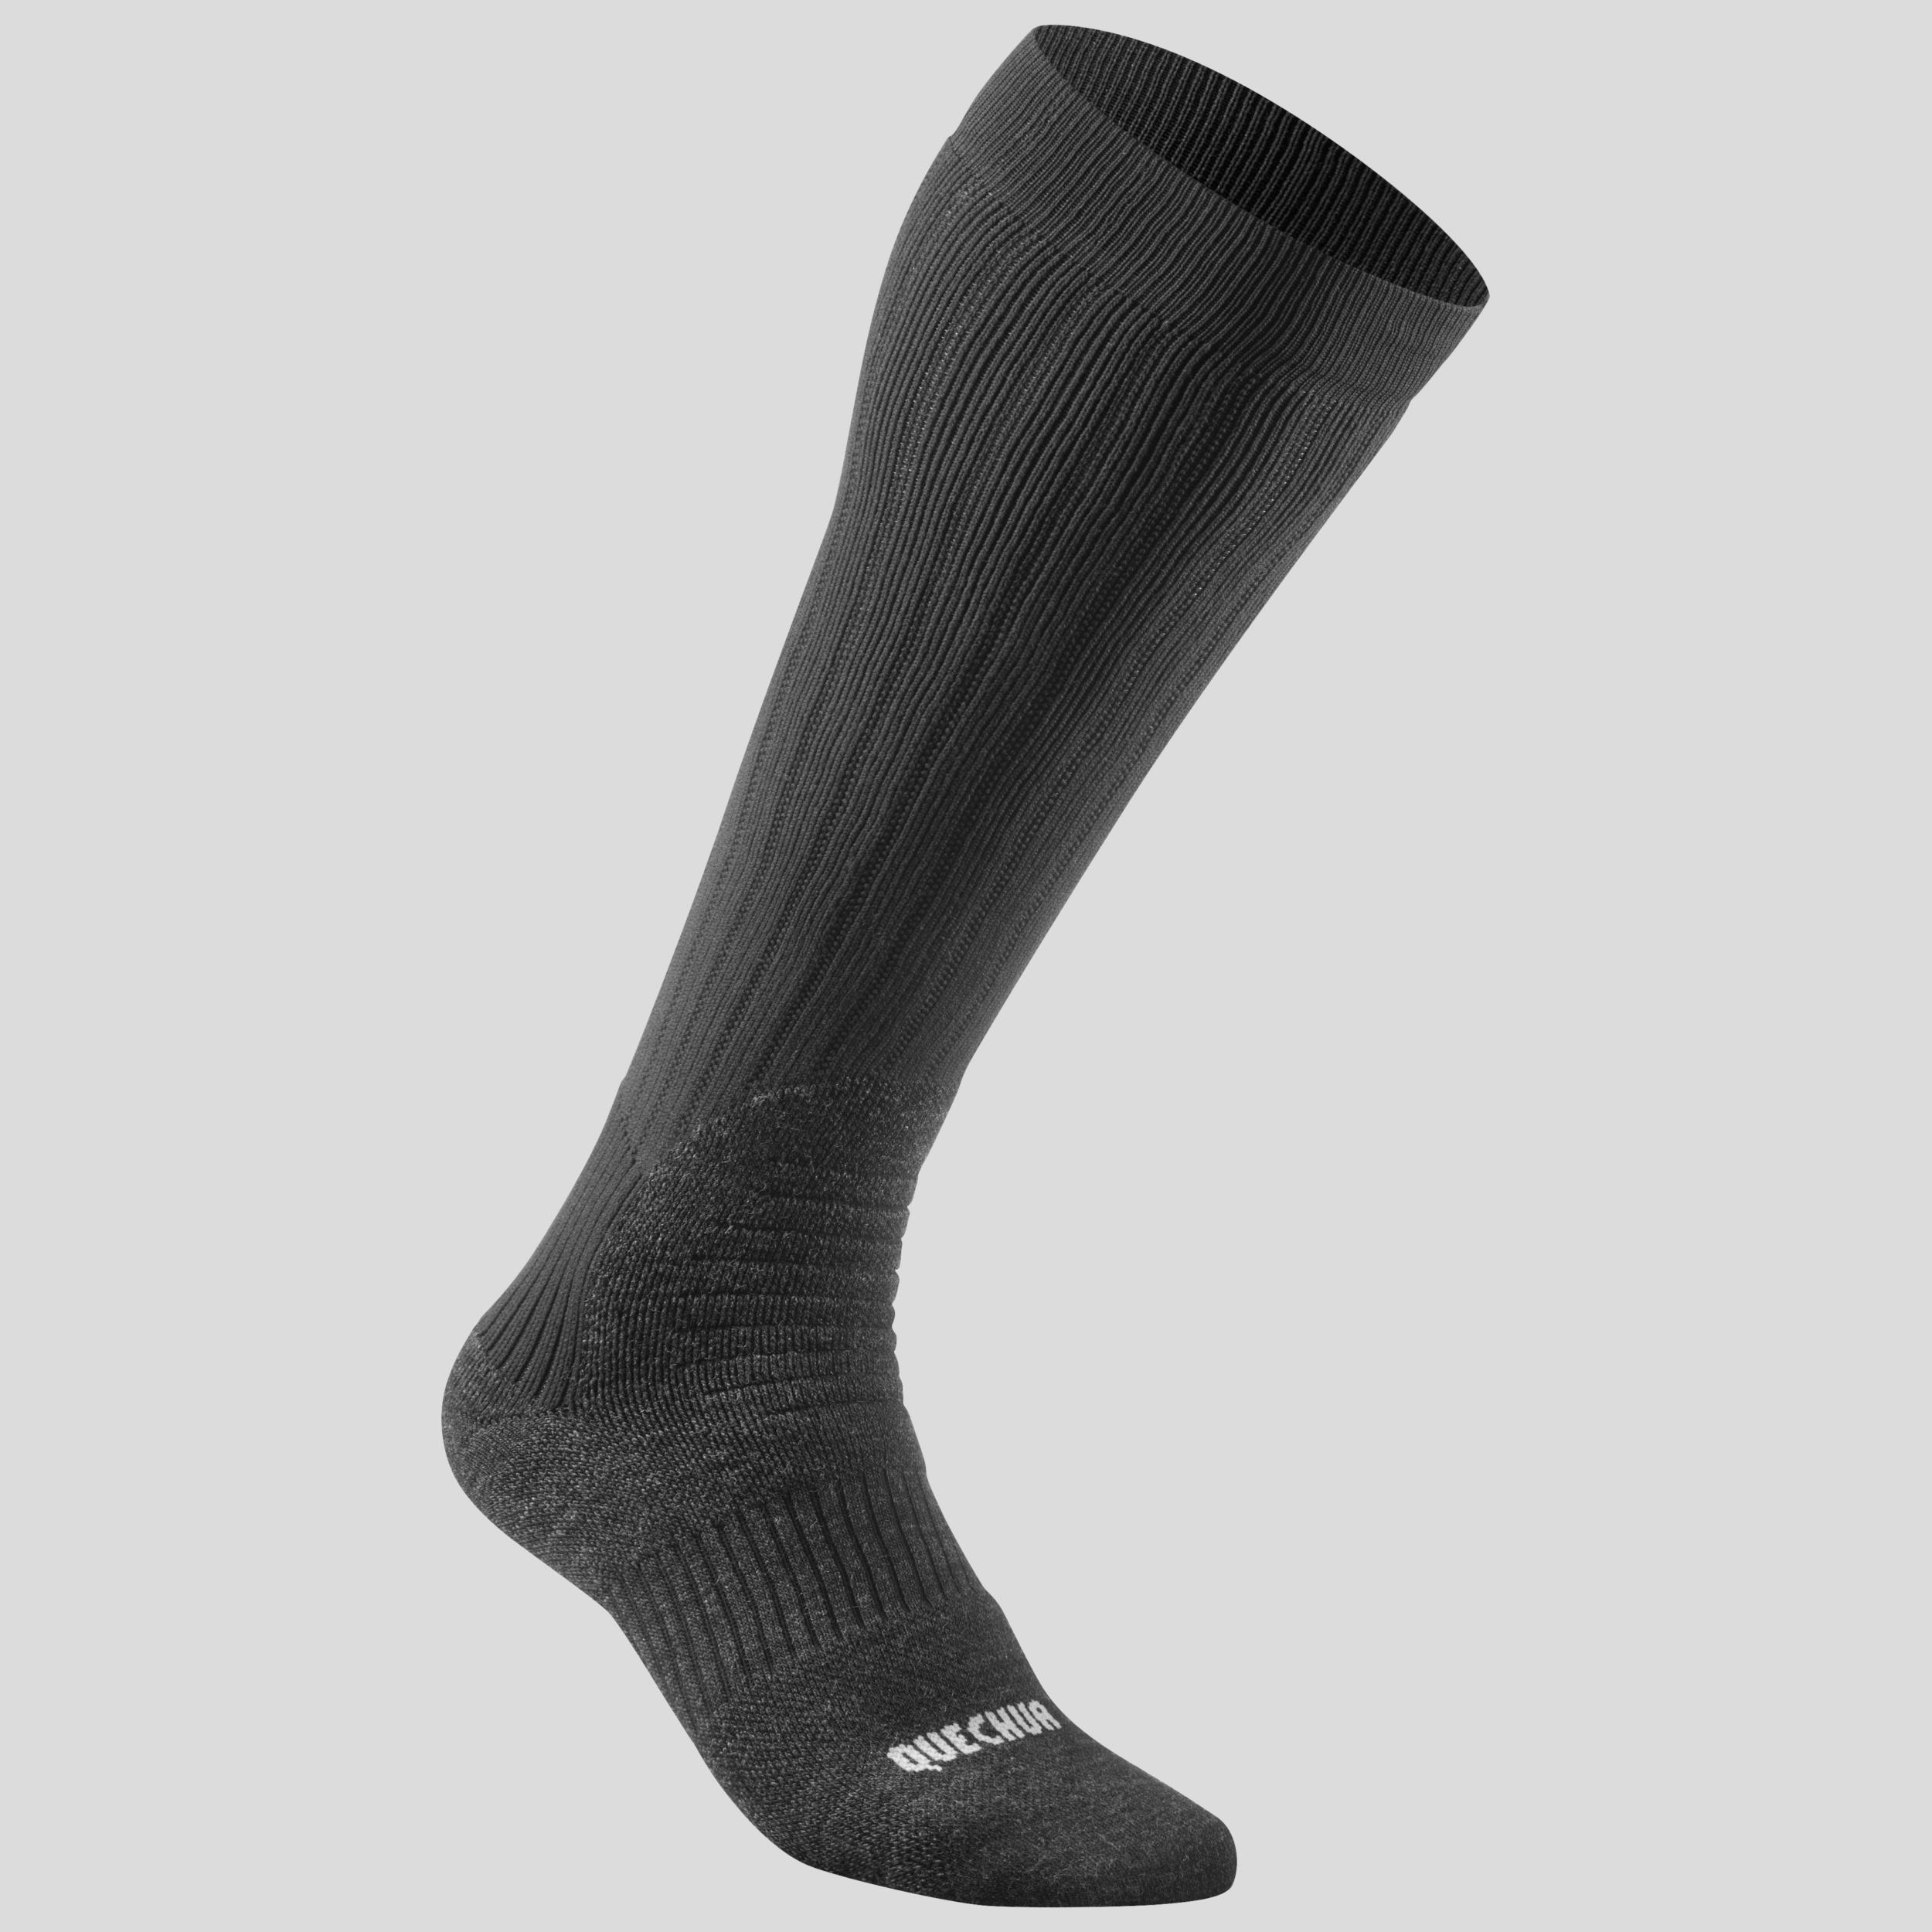 Warm Hiking Socks - SH100 X-WARM HAUTES - 2 Pairs 2/5